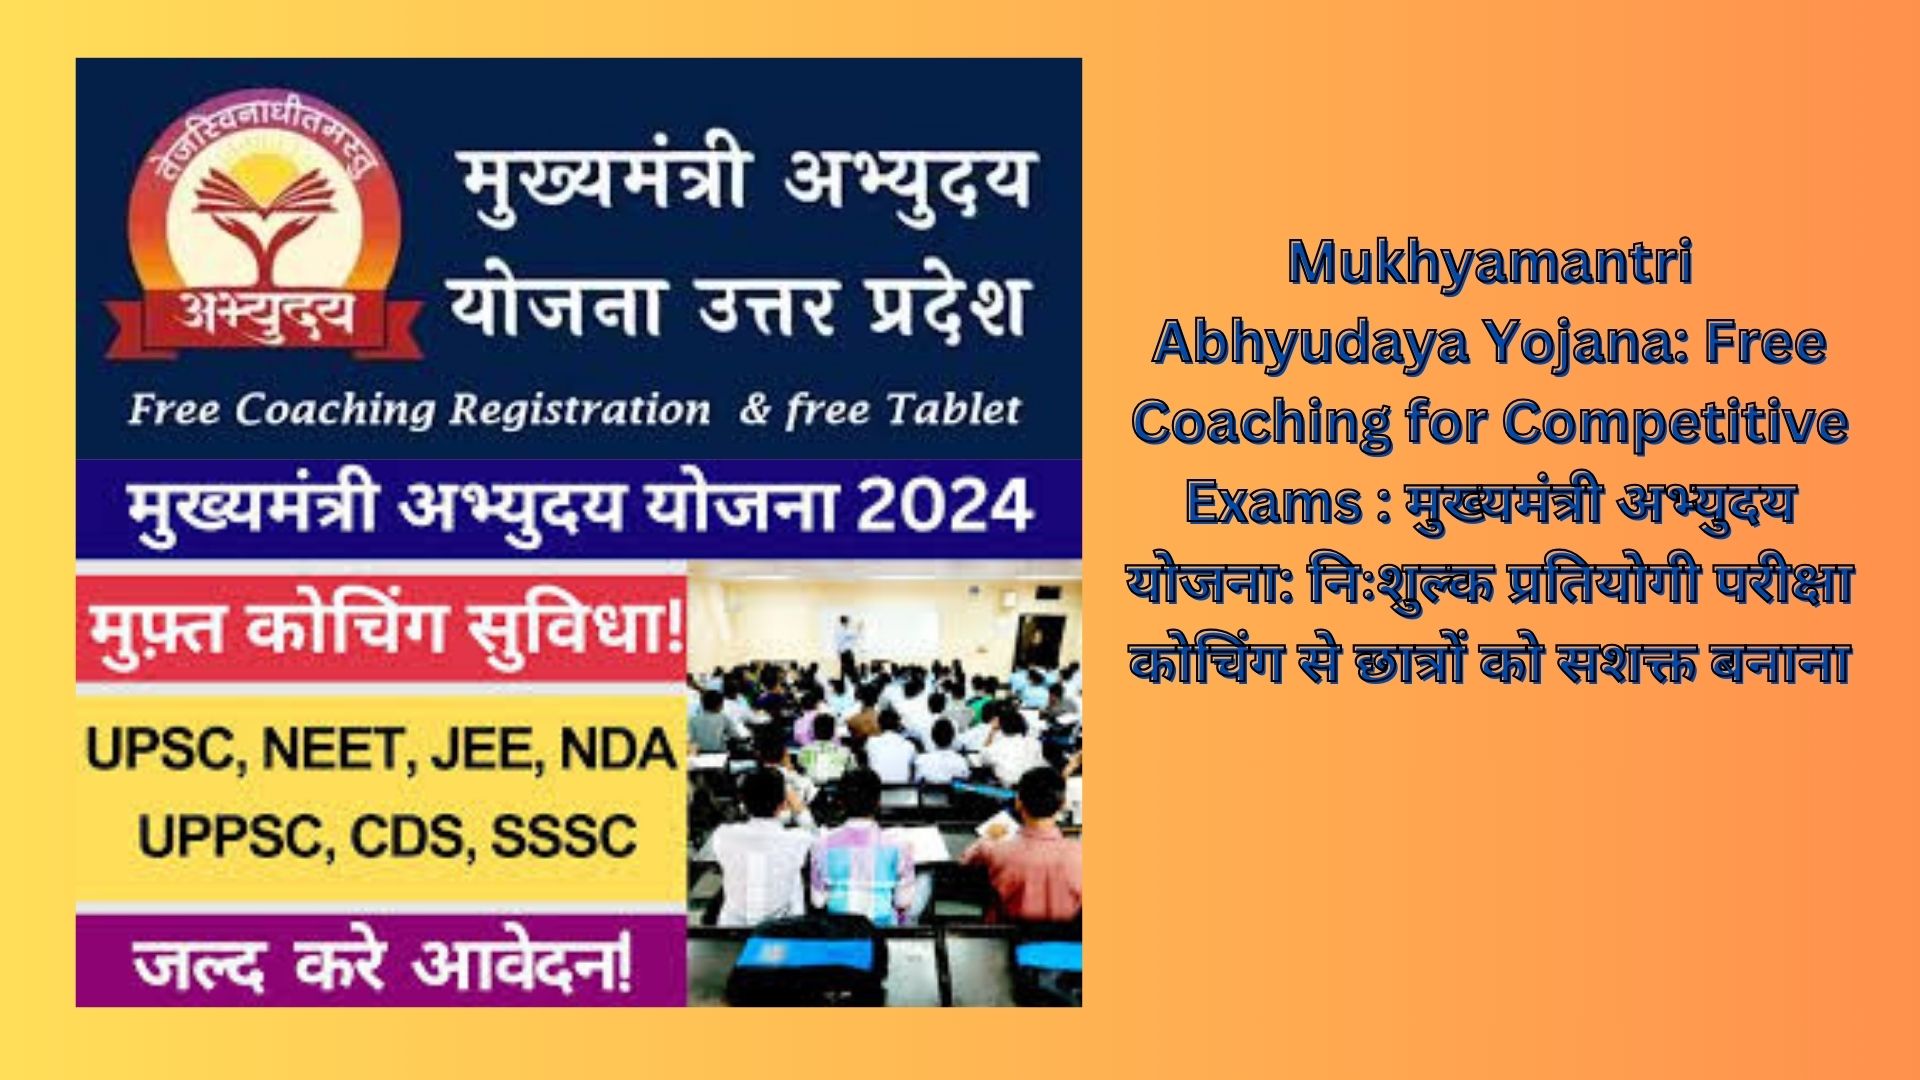 Mukhyamantri Abhyudaya Yojana: Free Coaching for Competitive Exams : मुख्यमंत्री अभ्युदय योजना: निःशुल्क प्रतियोगी परीक्षा कोचिंग से छात्रों को सशक्त बनाना